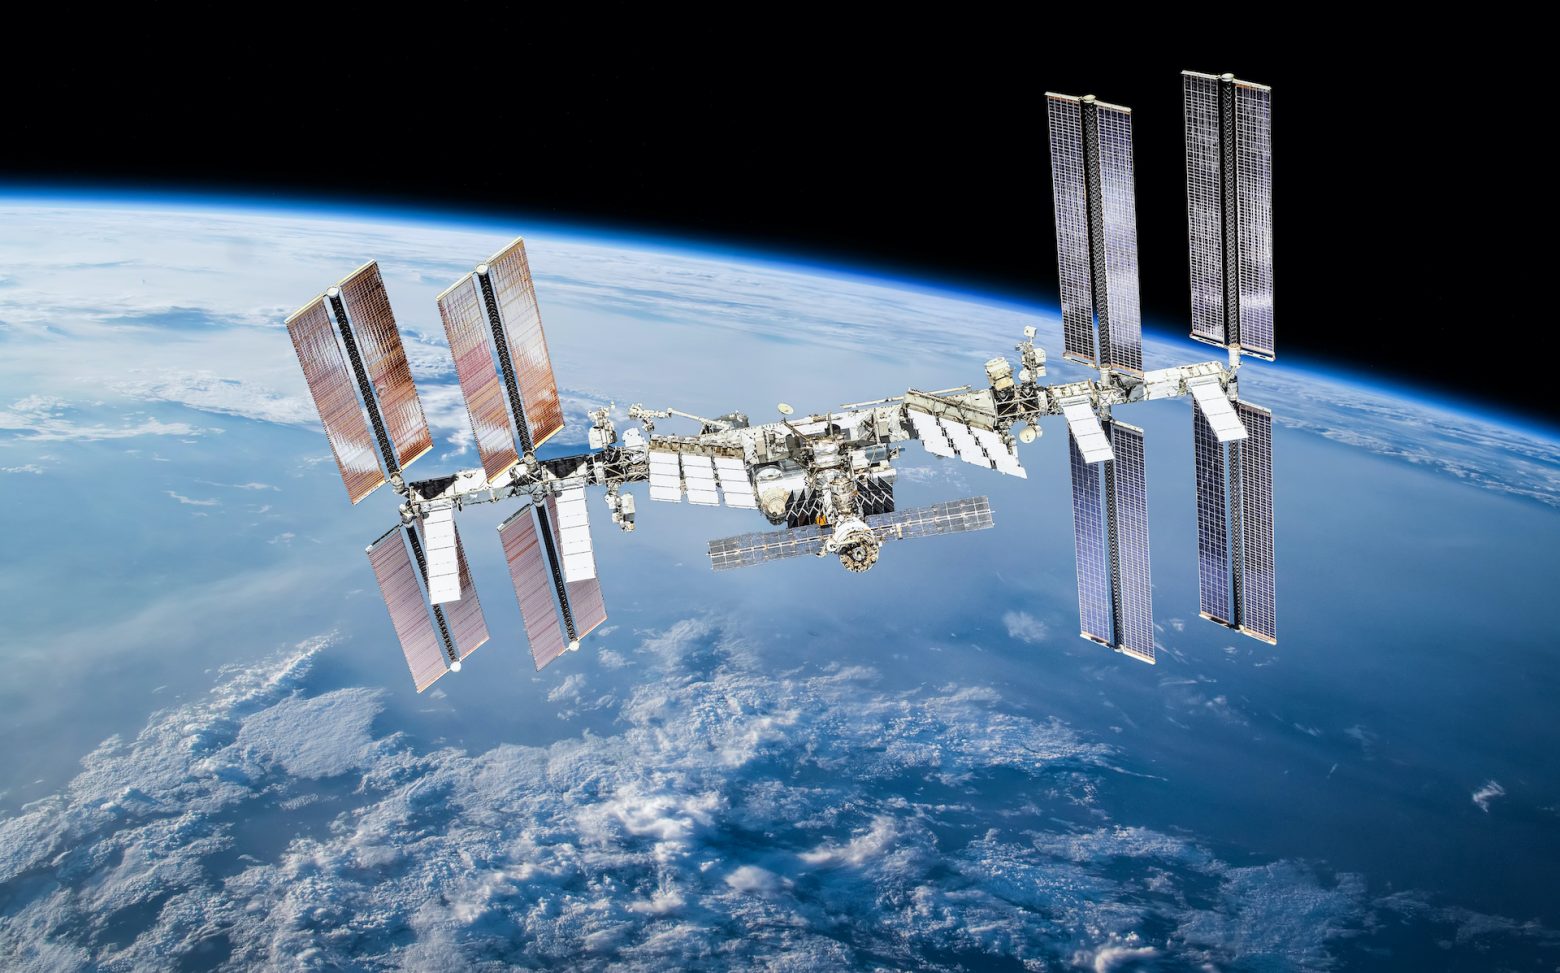 Διεθνής Διαστημικός Σταθμός: Το Τόκιο παρατείνει την συμμετοχή του μέχρι το 2030, με το βλέμμα στη σελήνη